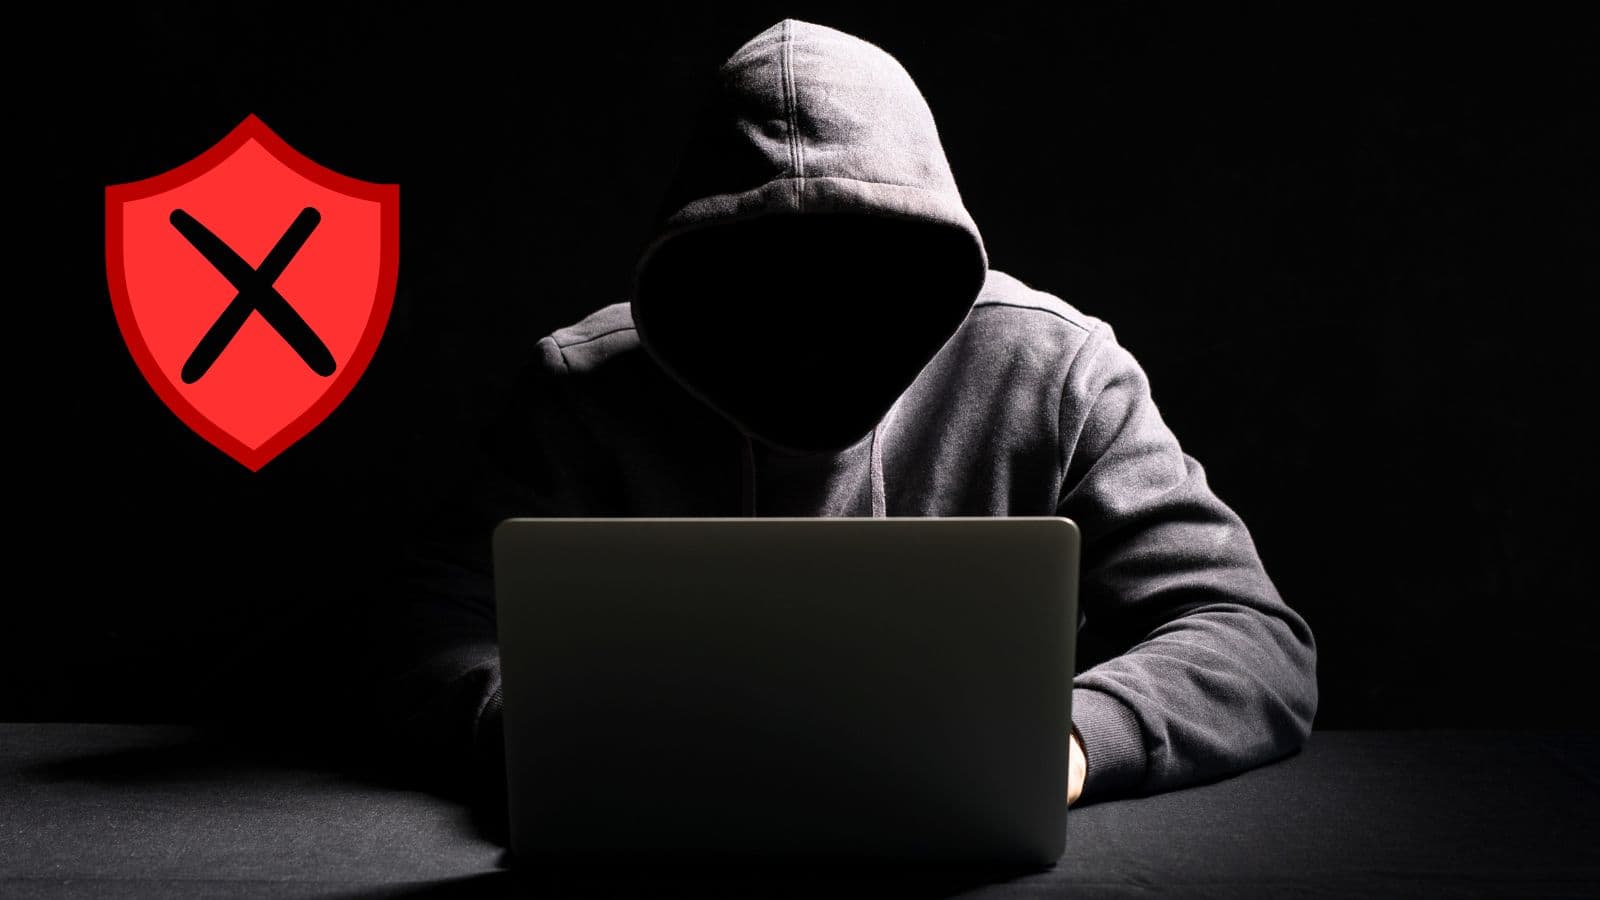 Piracy Shield: sicurezza compromessa per un attacco hacker?